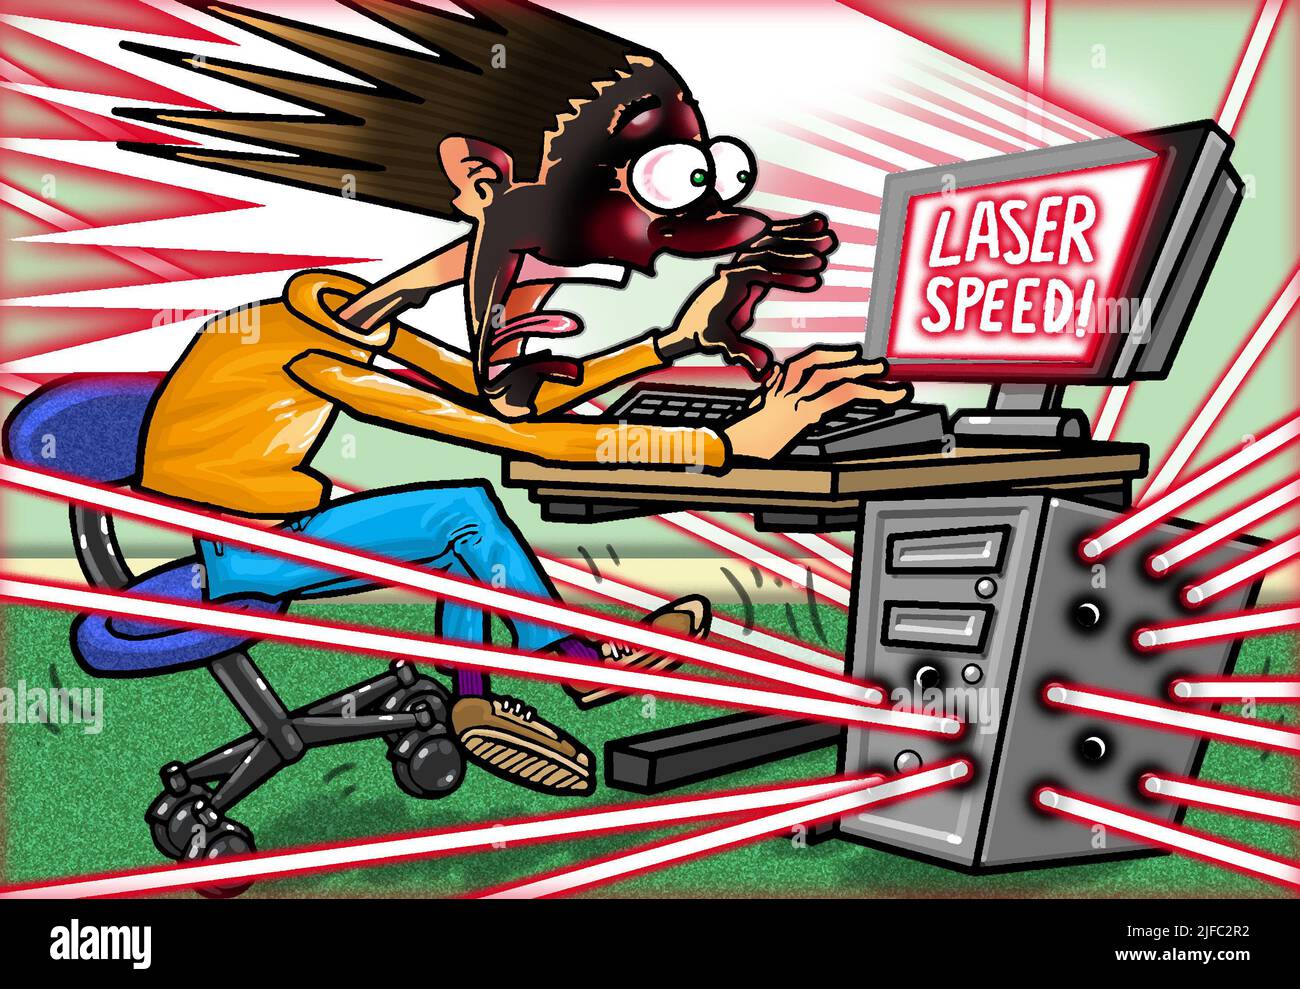 Dessin humoristique illustrant les vitesses de calcul ultra-rapides concept: Les impulsions laser pourraient produire une percée dans l'informatique quantique vitesse de l'informatique légère Banque D'Images